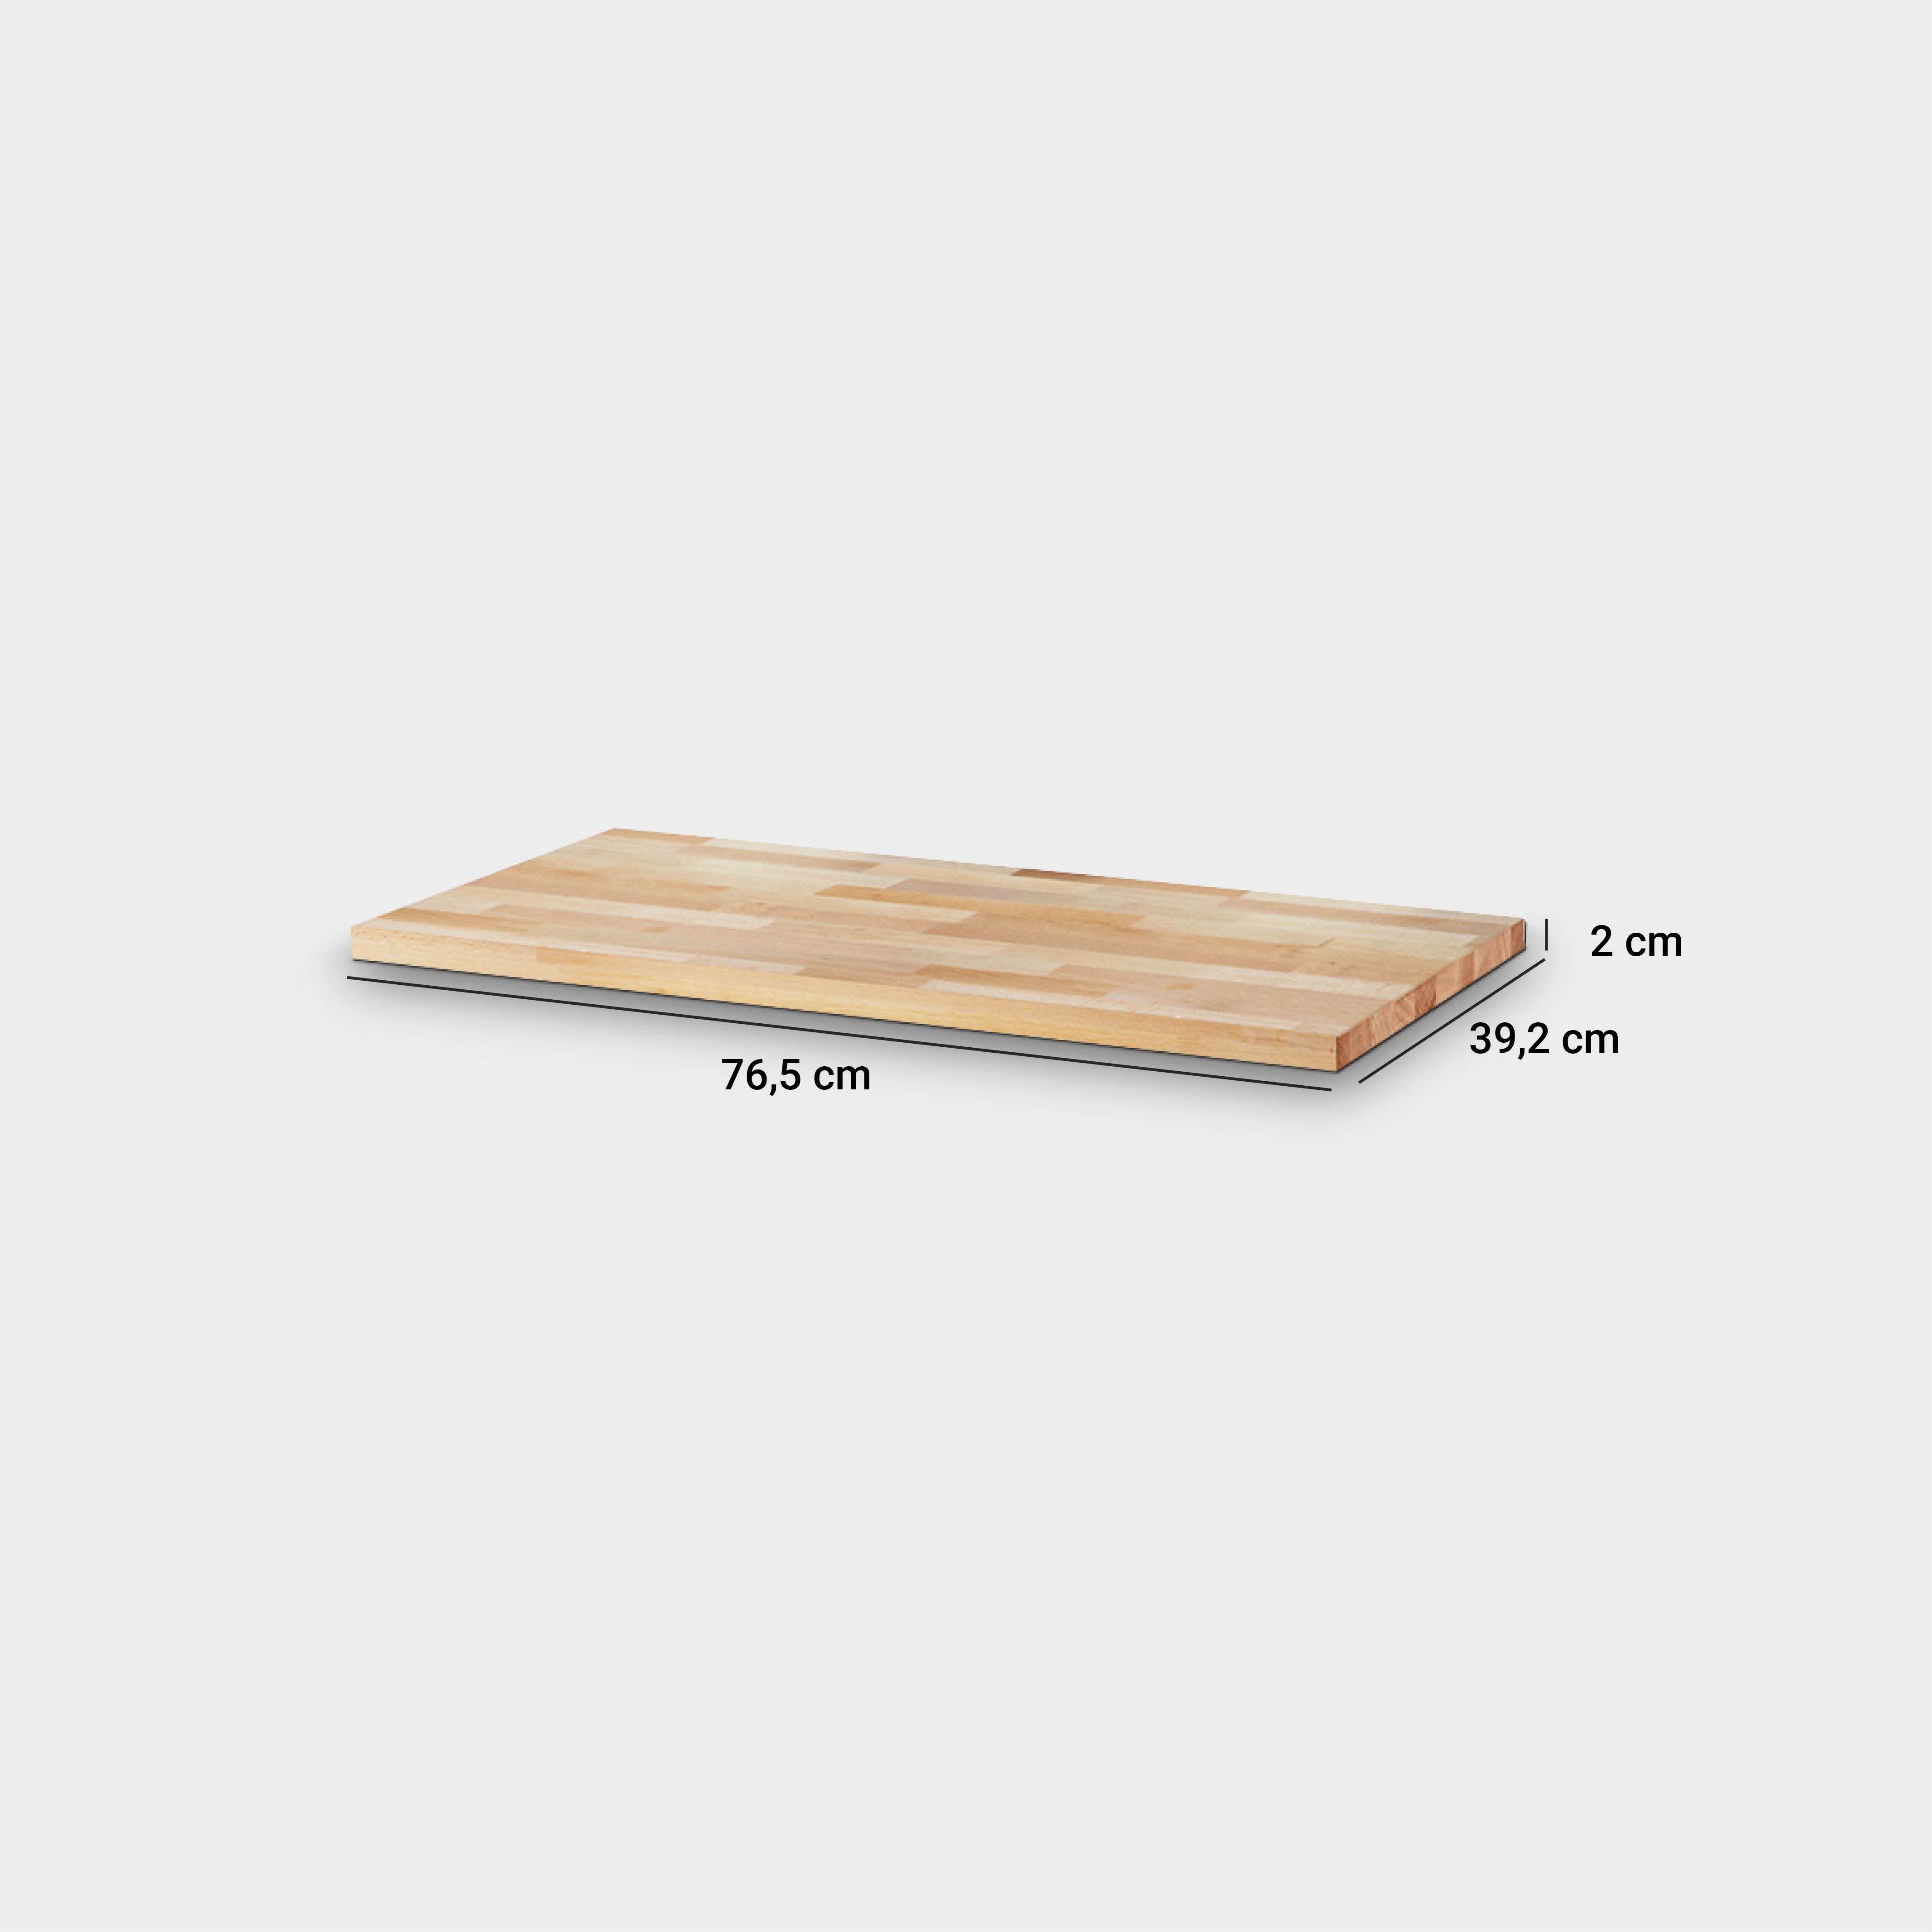 Kallax Holzplatte mit Maßgrößen (76,5 cm lang, 39, 2 cm breit und 2 cm hoch)